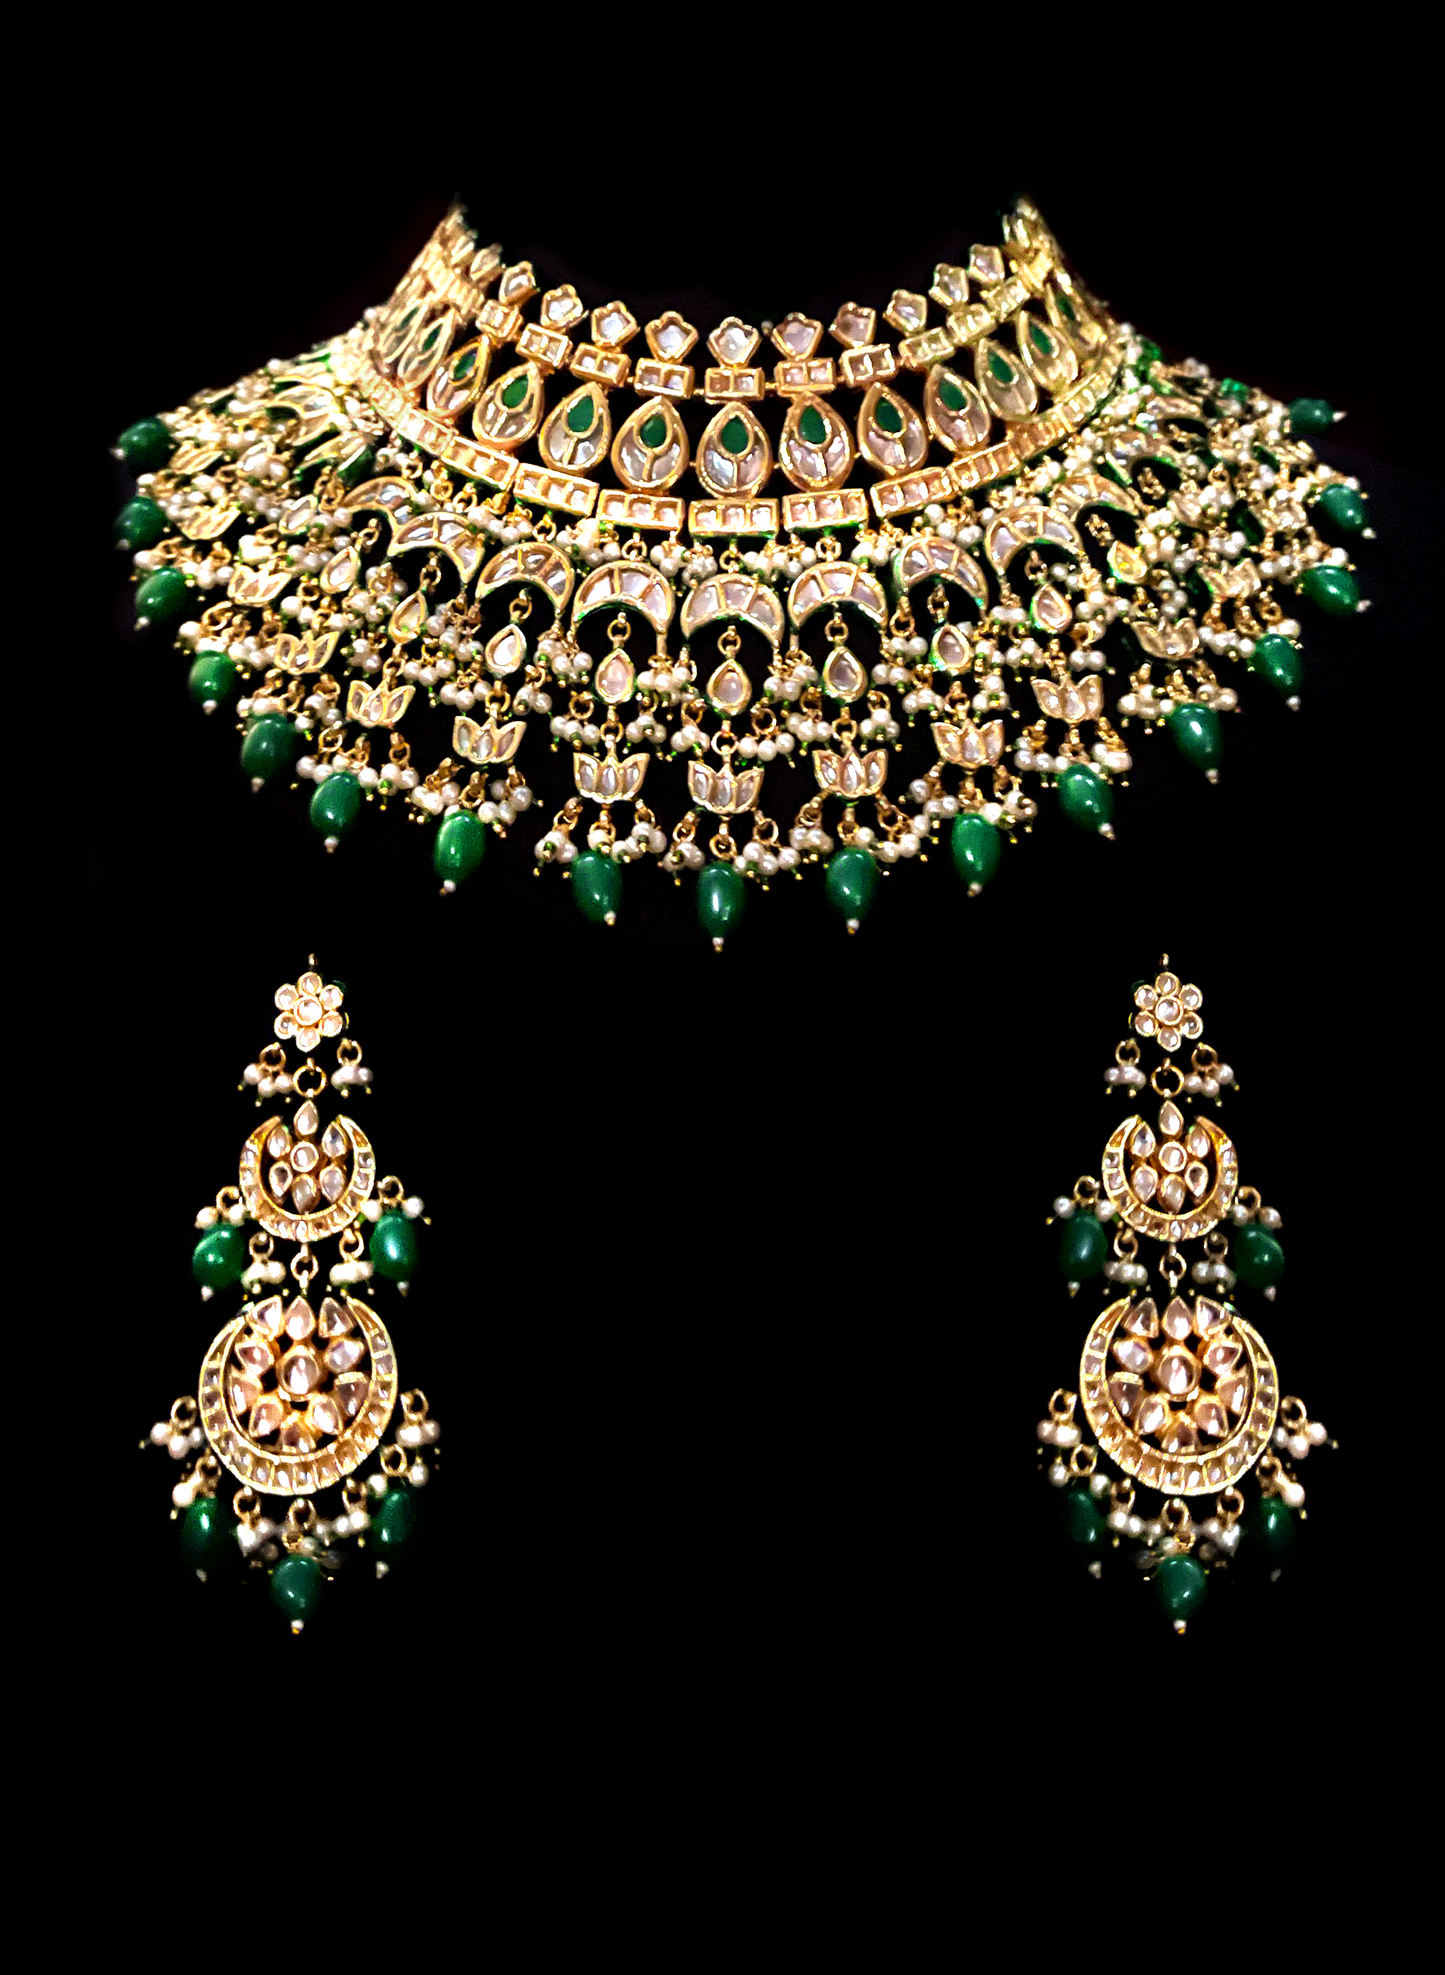 Kundan bridal choker with emerald drops